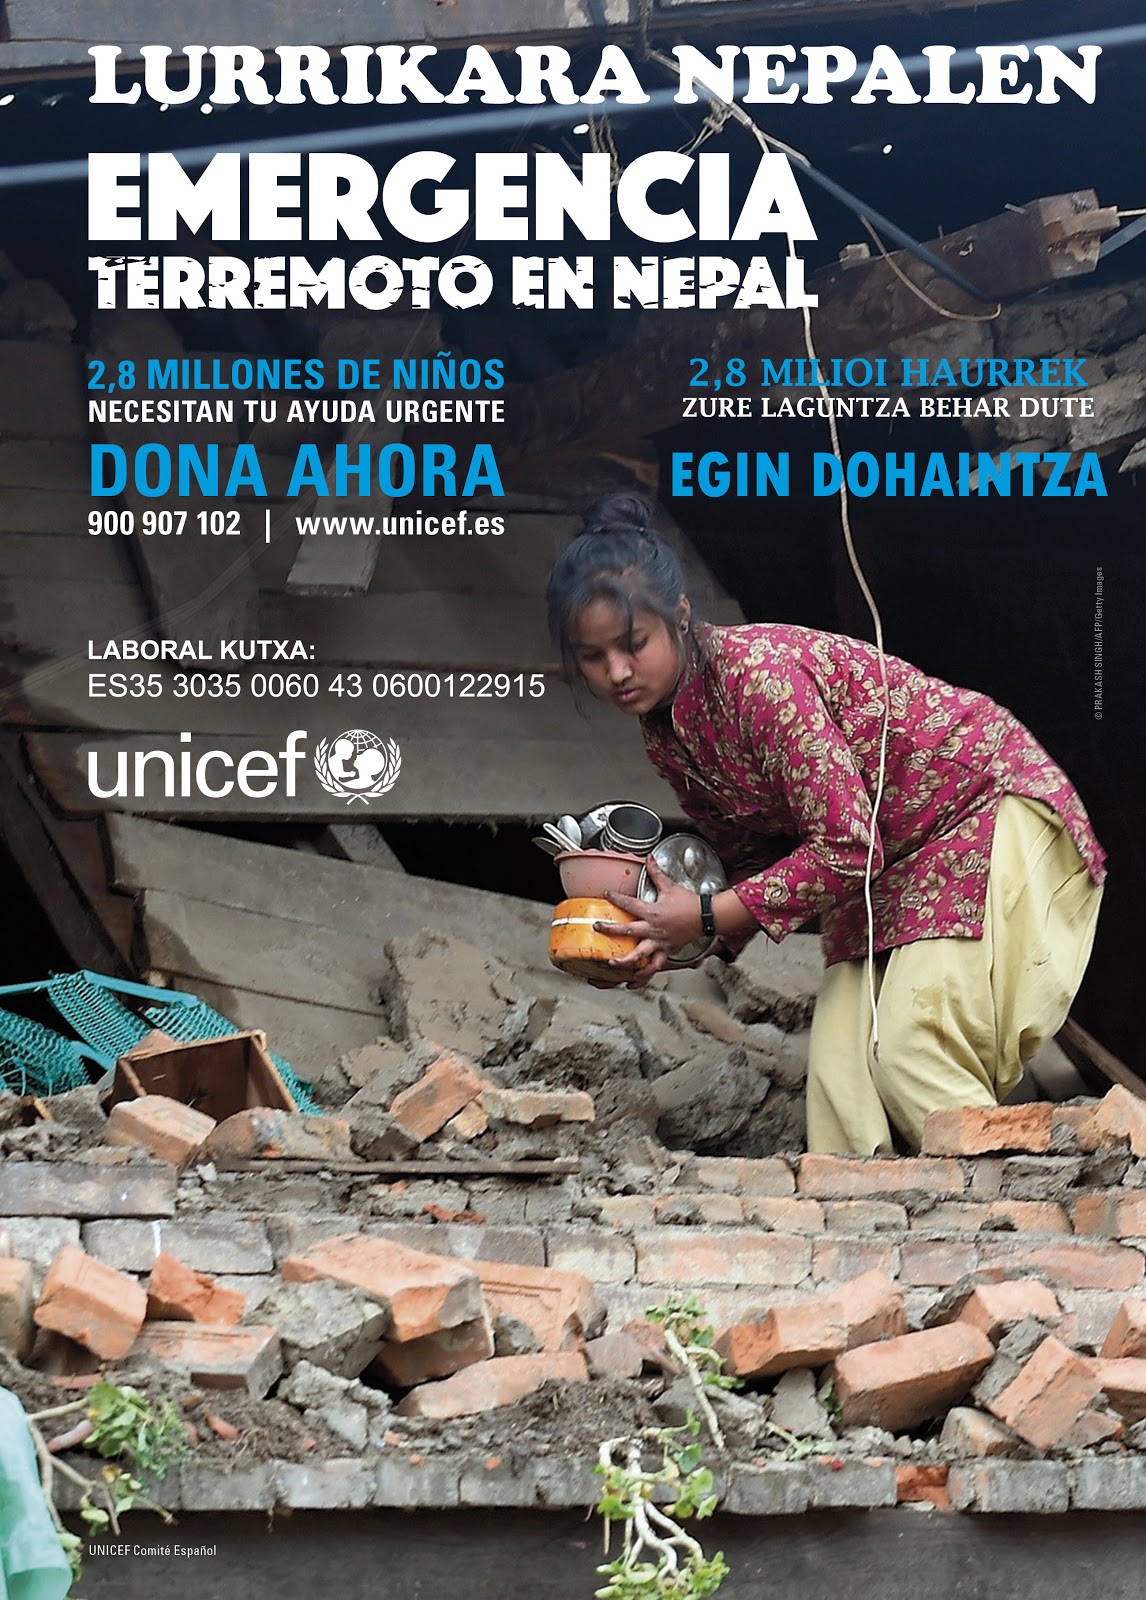 Terremoto en Nepal, colaboramos con UNICEF